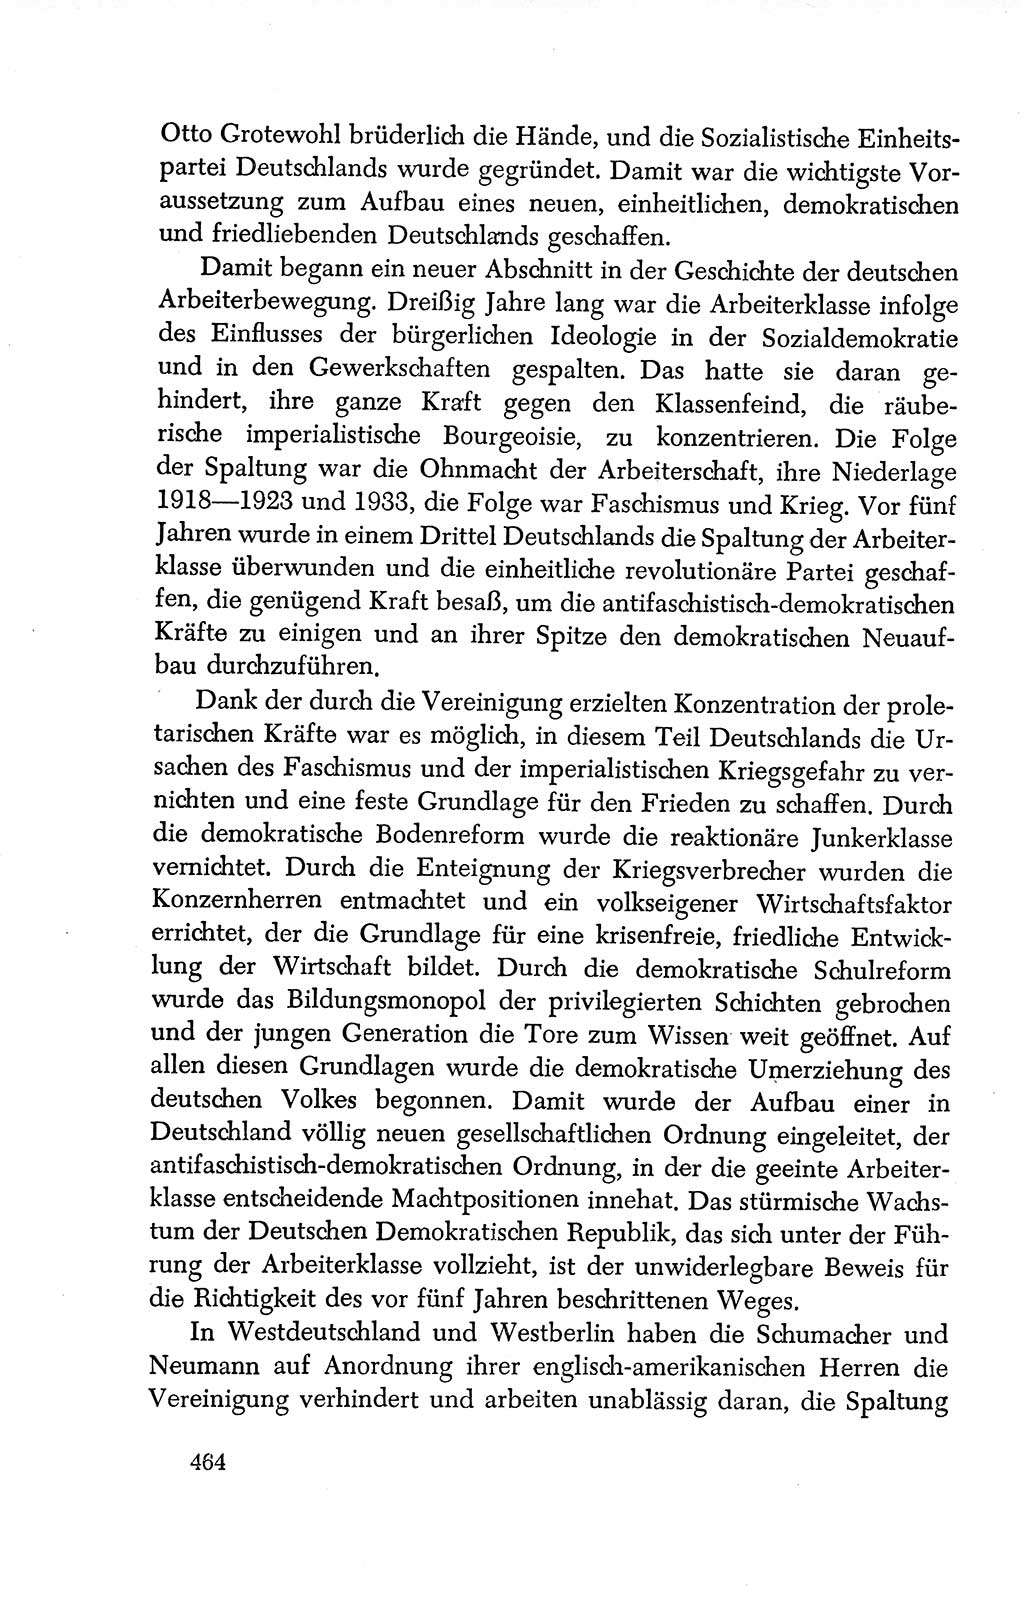 Dokumente der Sozialistischen Einheitspartei Deutschlands (SED) [Deutsche Demokratische Republik (DDR)] 1950-1952, Seite 464 (Dok. SED DDR 1950-1952, S. 464)